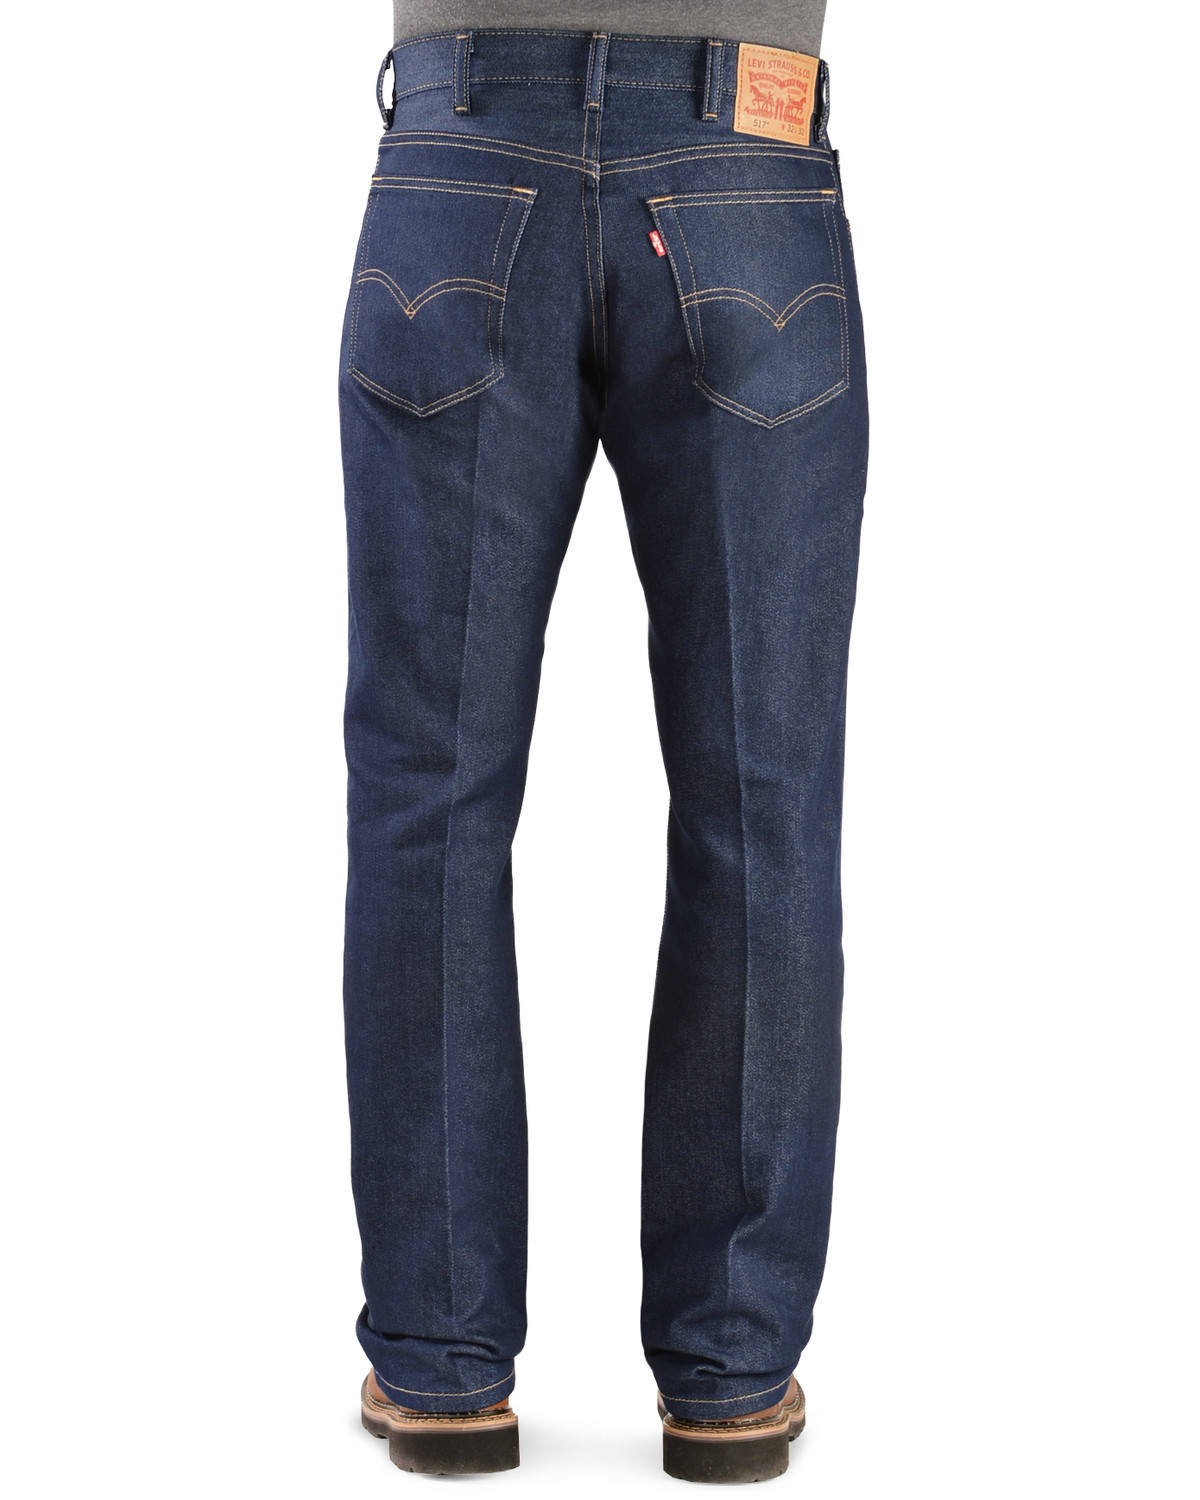 517 levis boot cut jeans